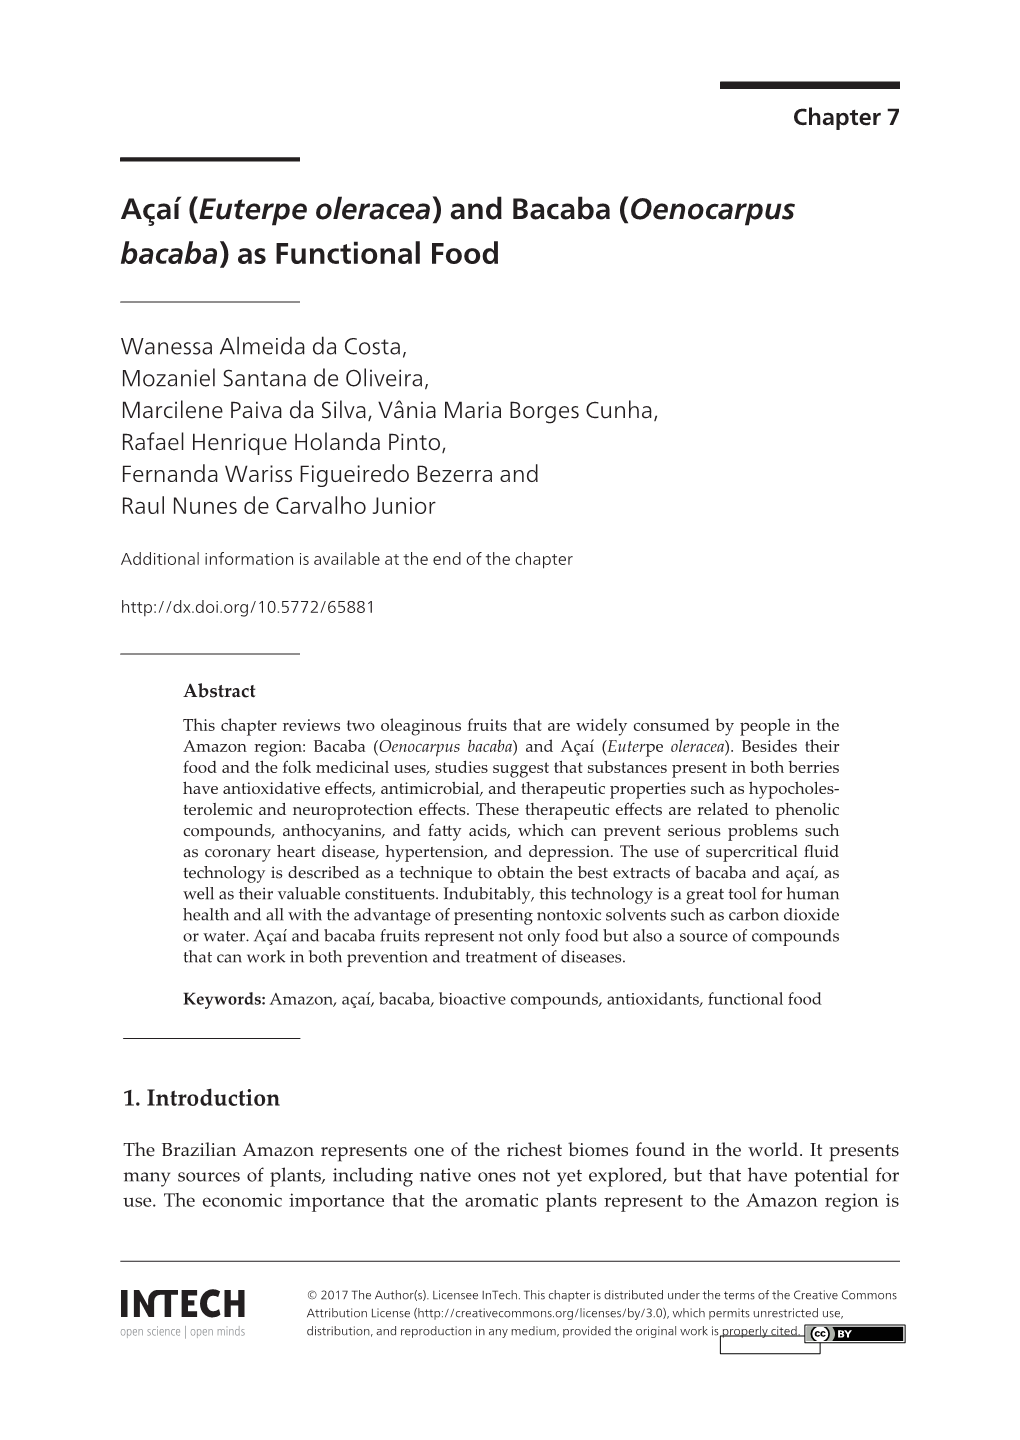 (Oenocarpus Bacaba) As Functional Food